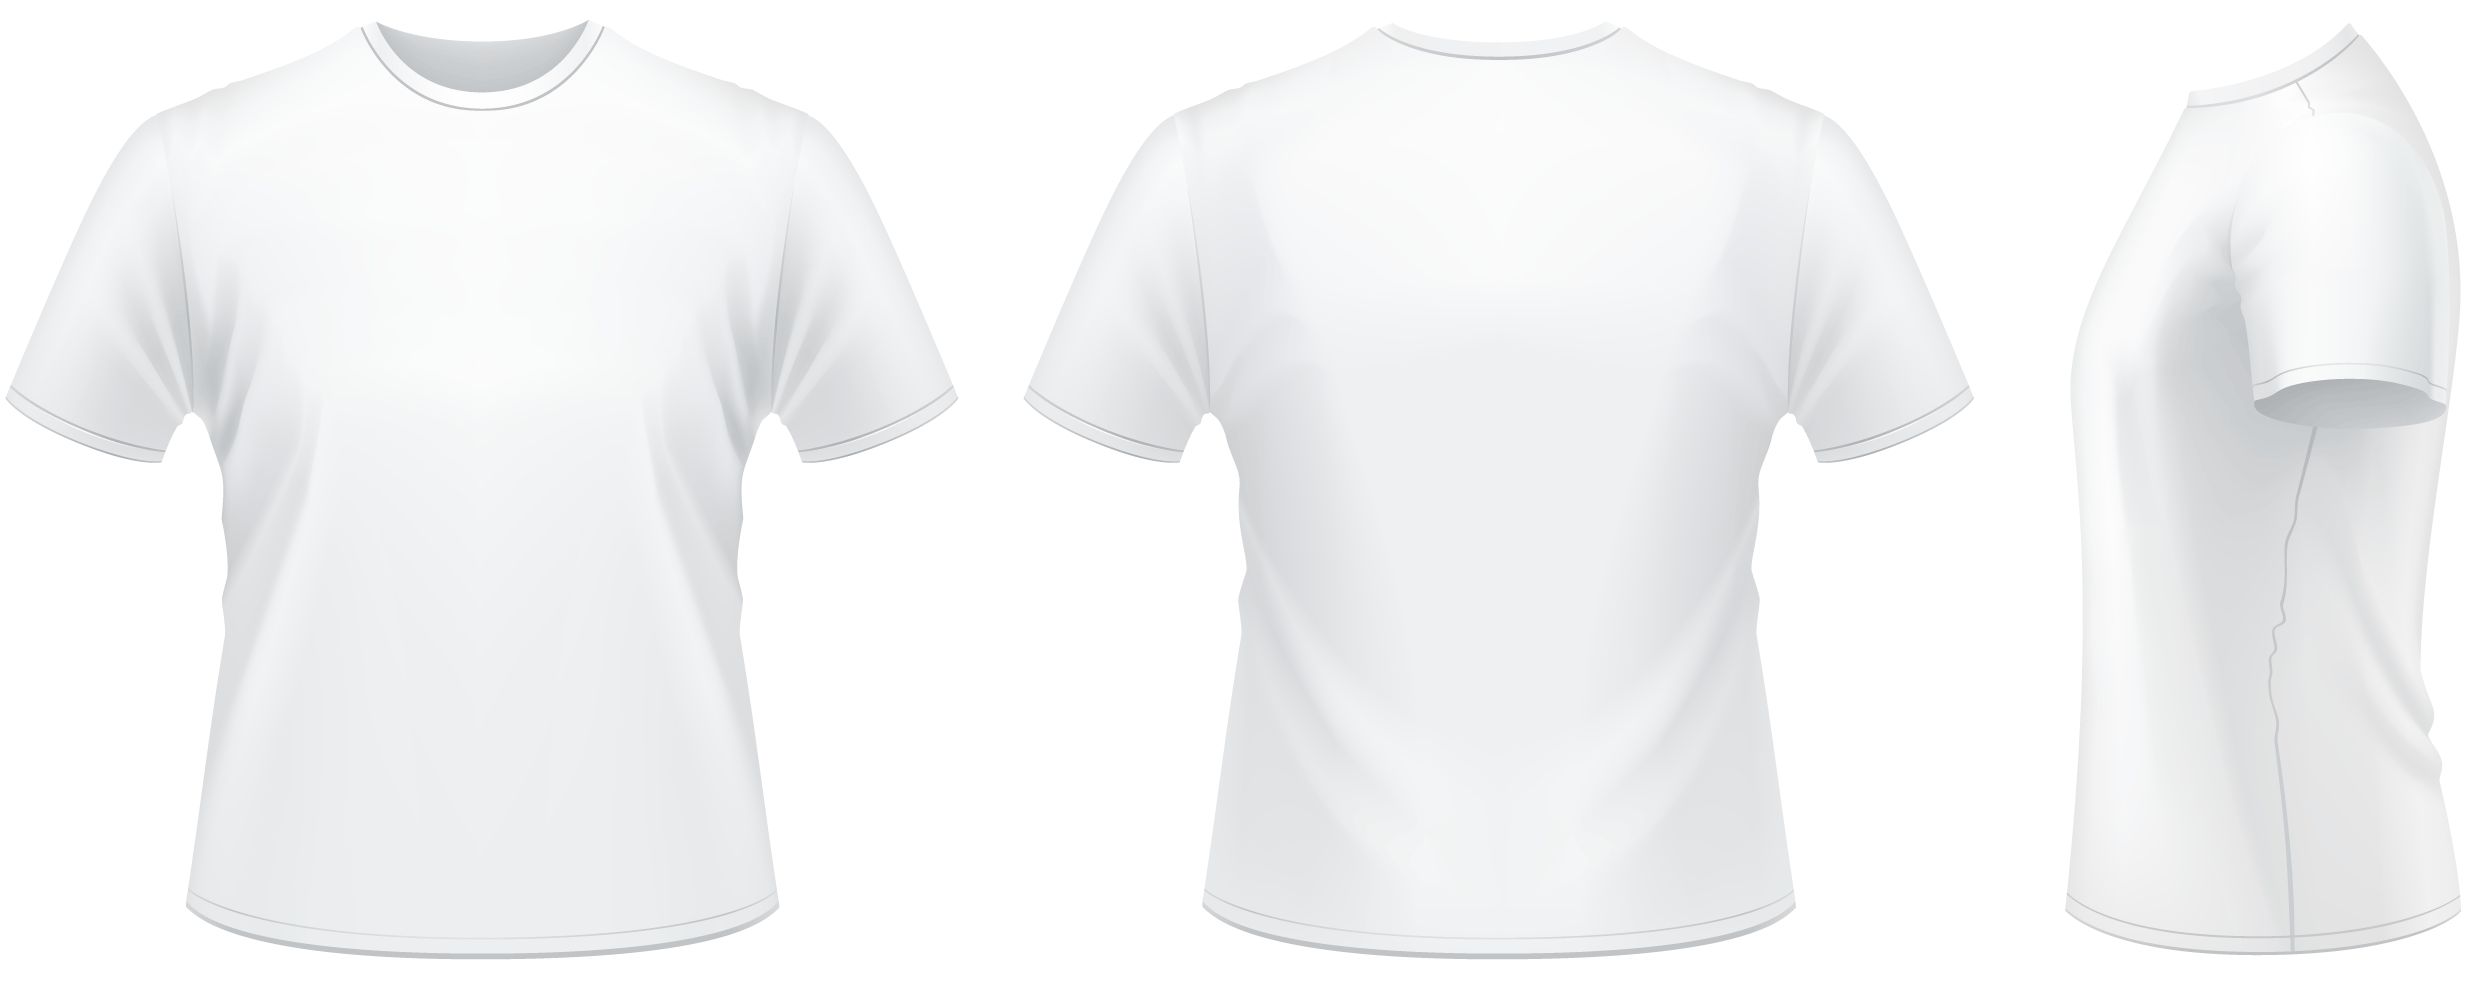 Camiseta 100% algodão - Branca - Uniformes Benvenutti